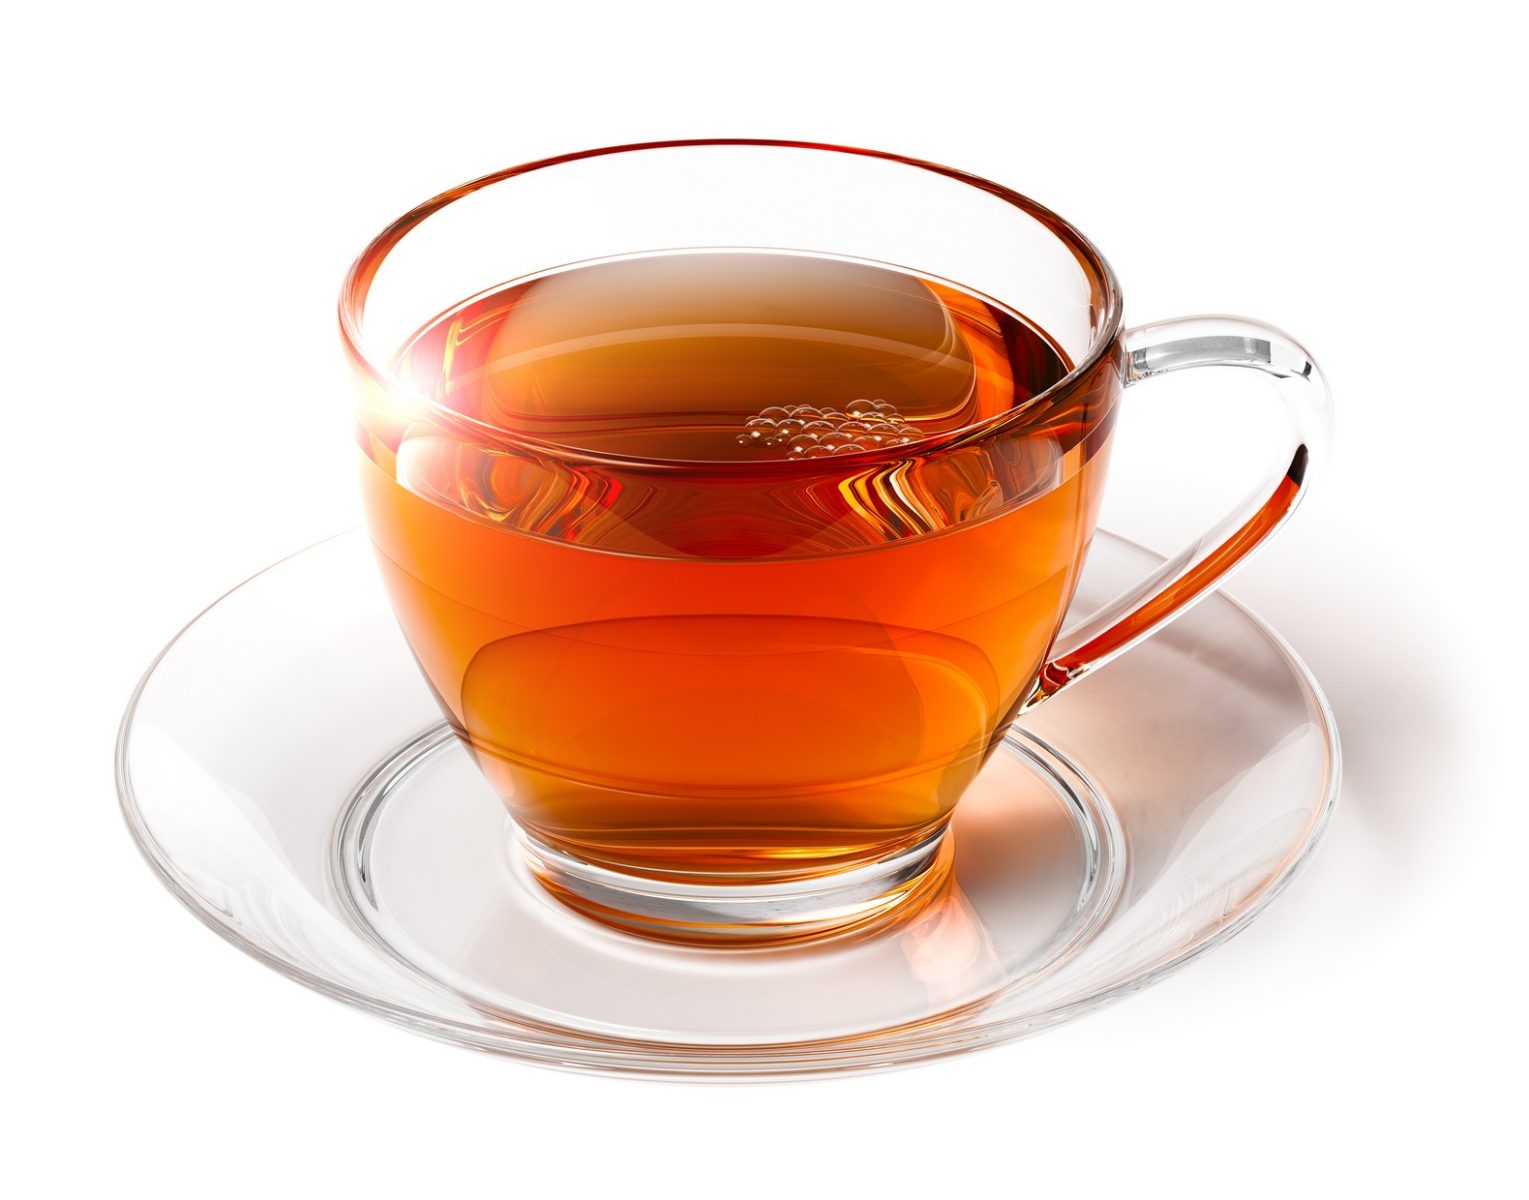 Portland Tea Service | Corvallis Office Coffee & Tea | Clackamas Healthy Beverages